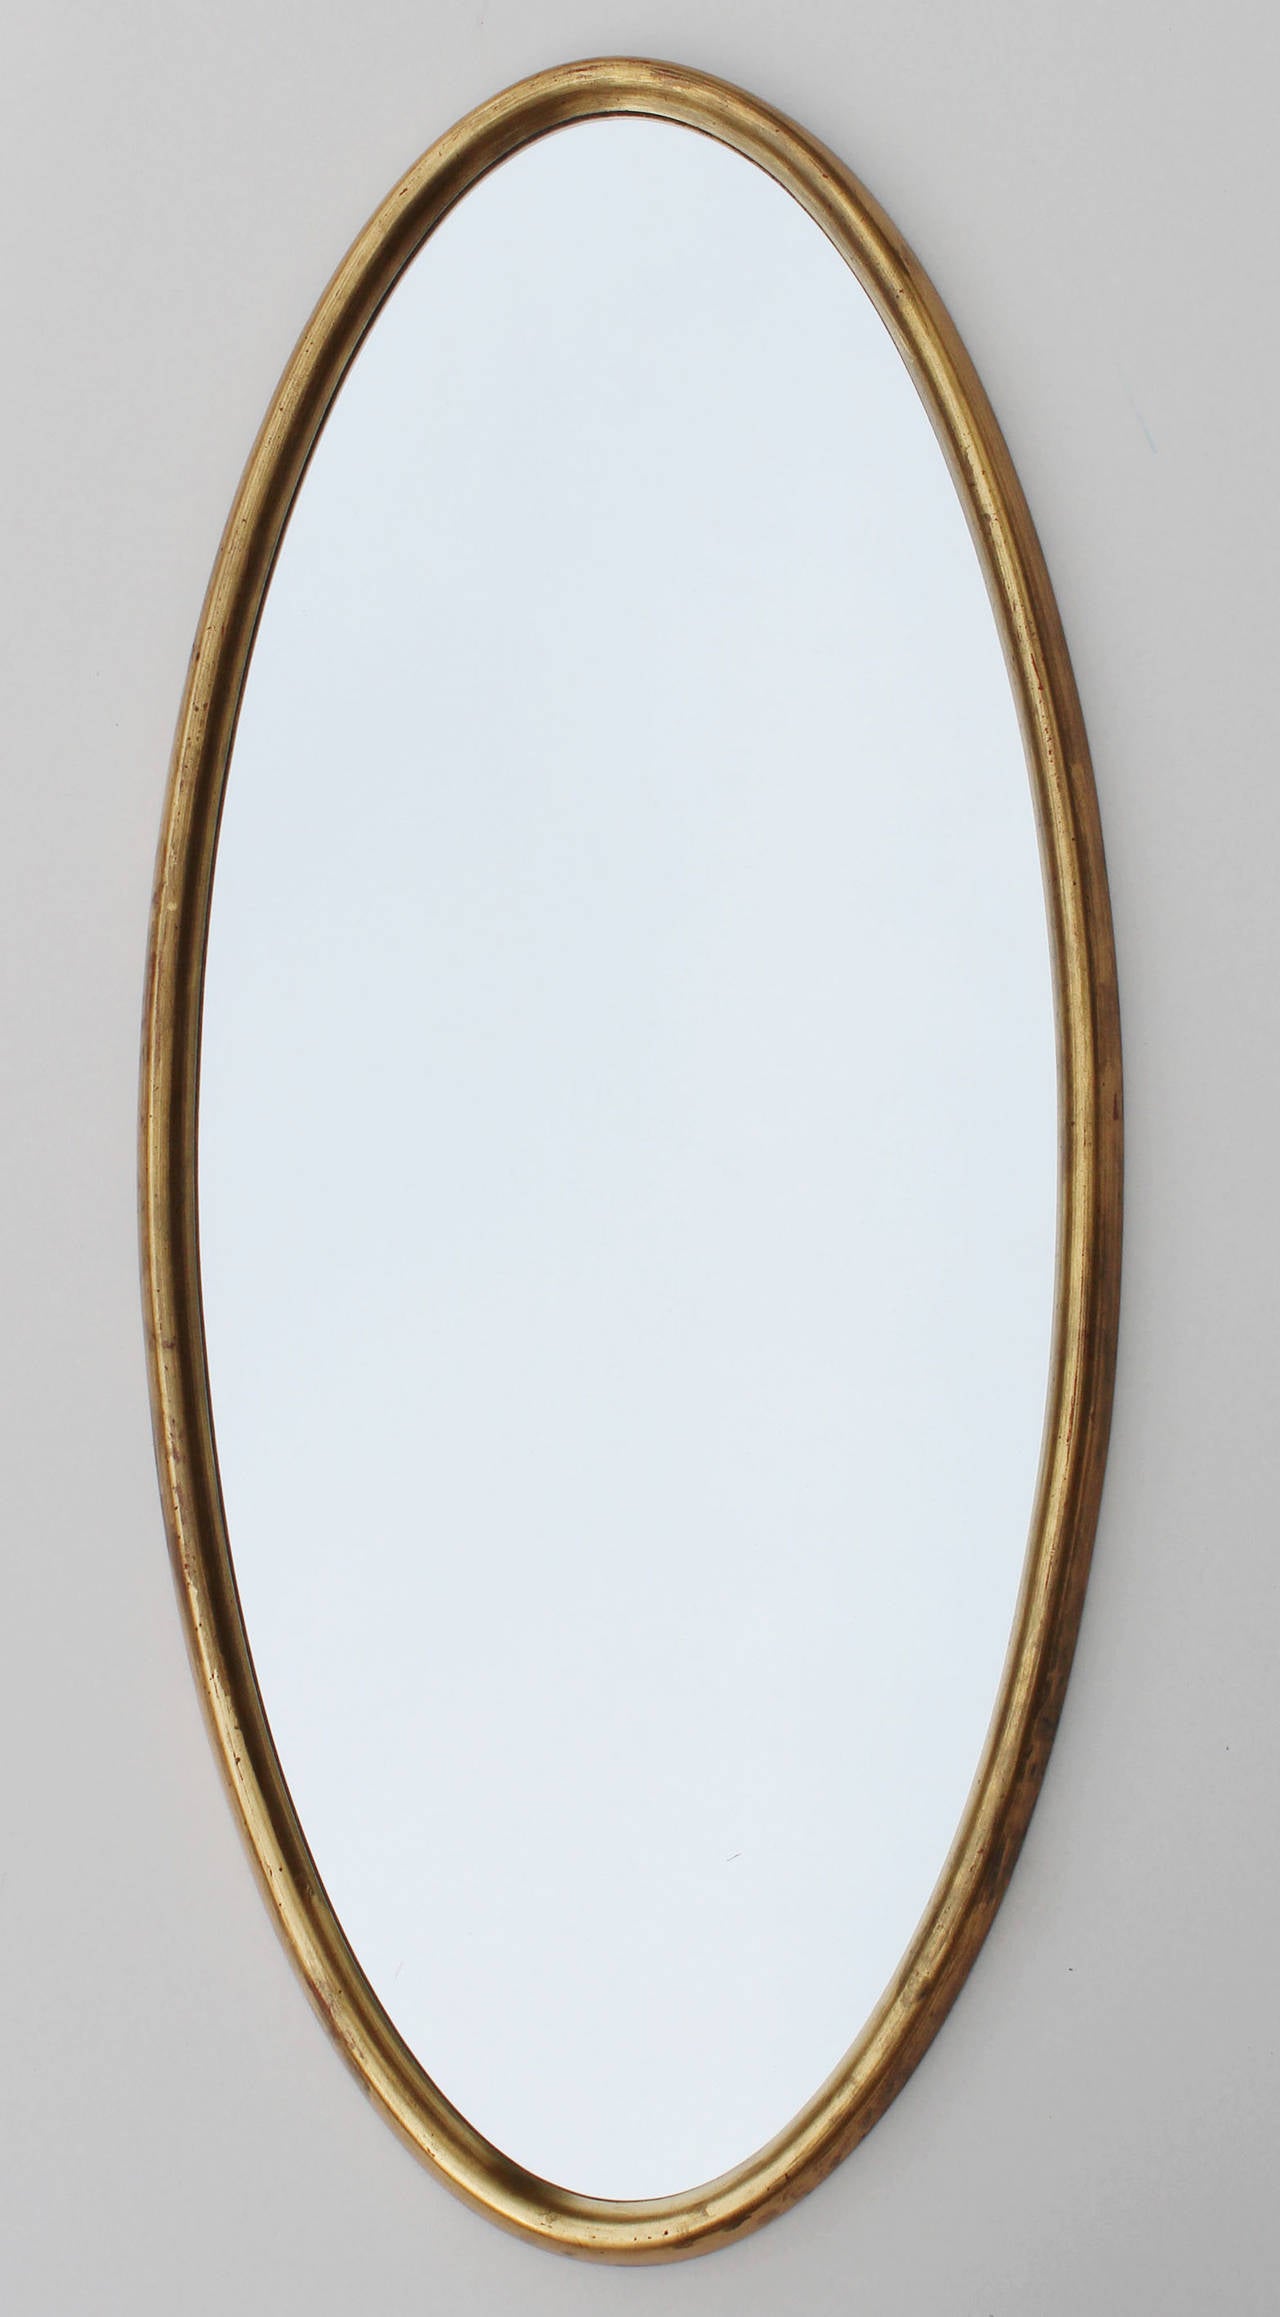 Handsome, deep bevel oval gold leaf wood frame mirror by La Barge